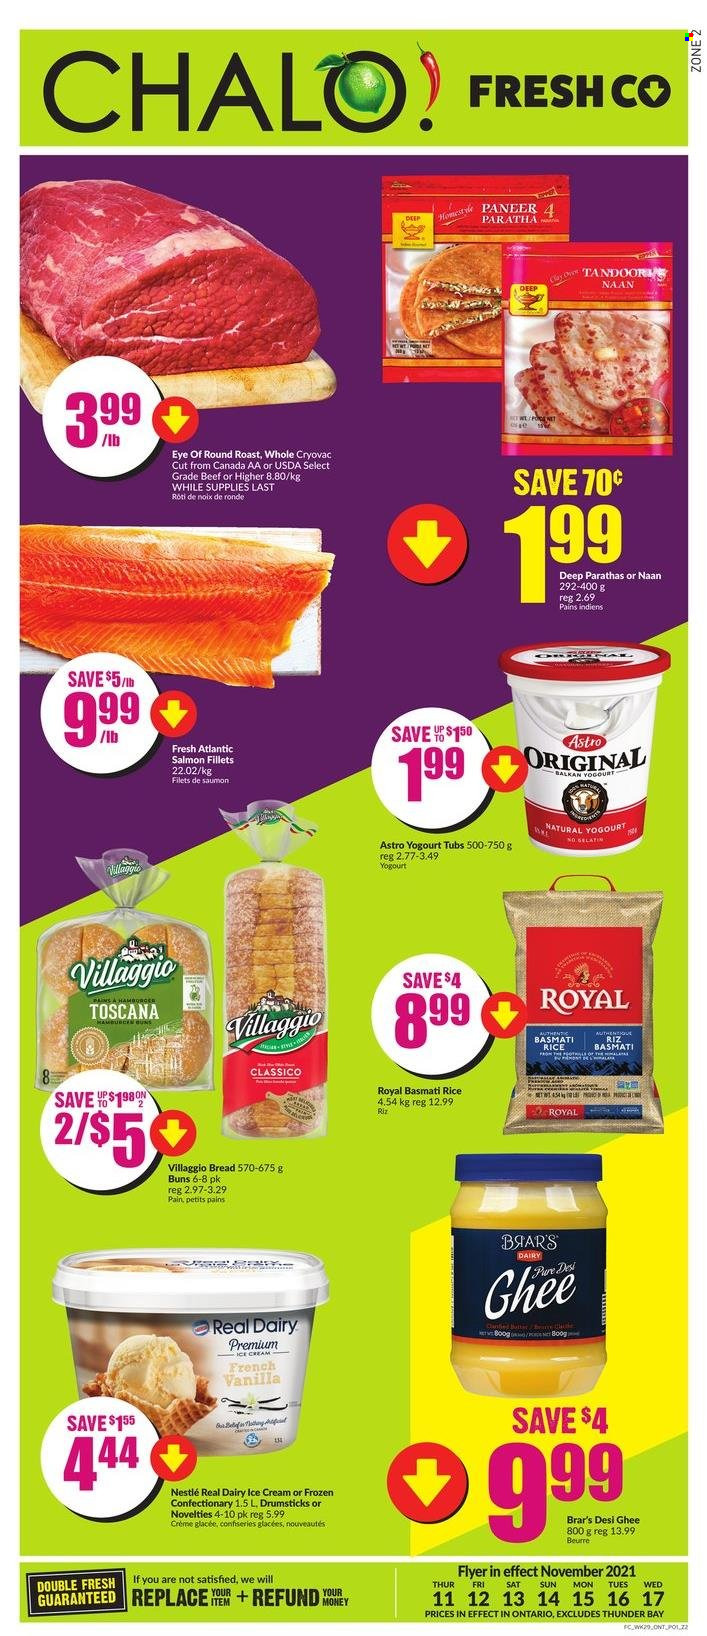 thumbnail - Circulaire Chalo! FreshCo. - 11 Novembre 2021 - 17 Novembre 2021 - Produits soldés - pain, riz, beurre, glace, Nestlé. Page 1.